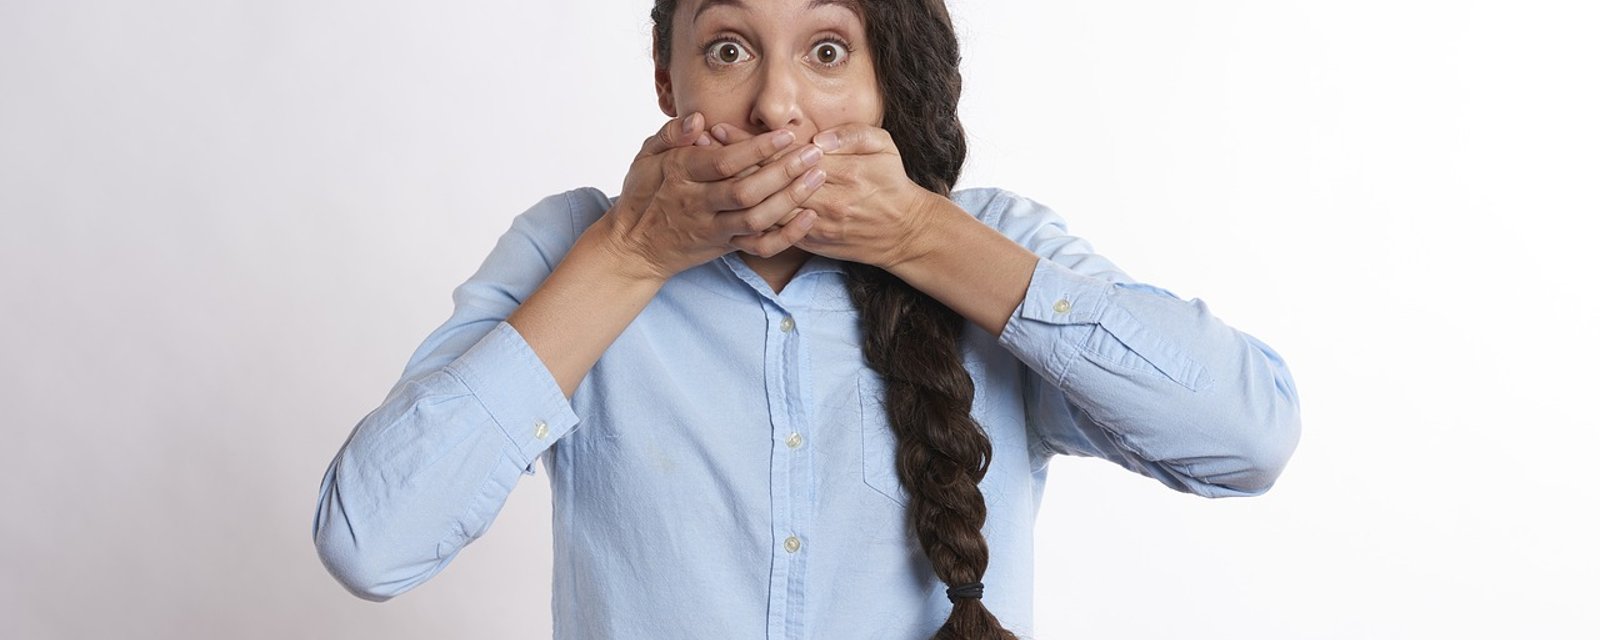 Savez-vous comment venir à bout de problèmes bucco-dentaires comme la mauvaise haleine ?